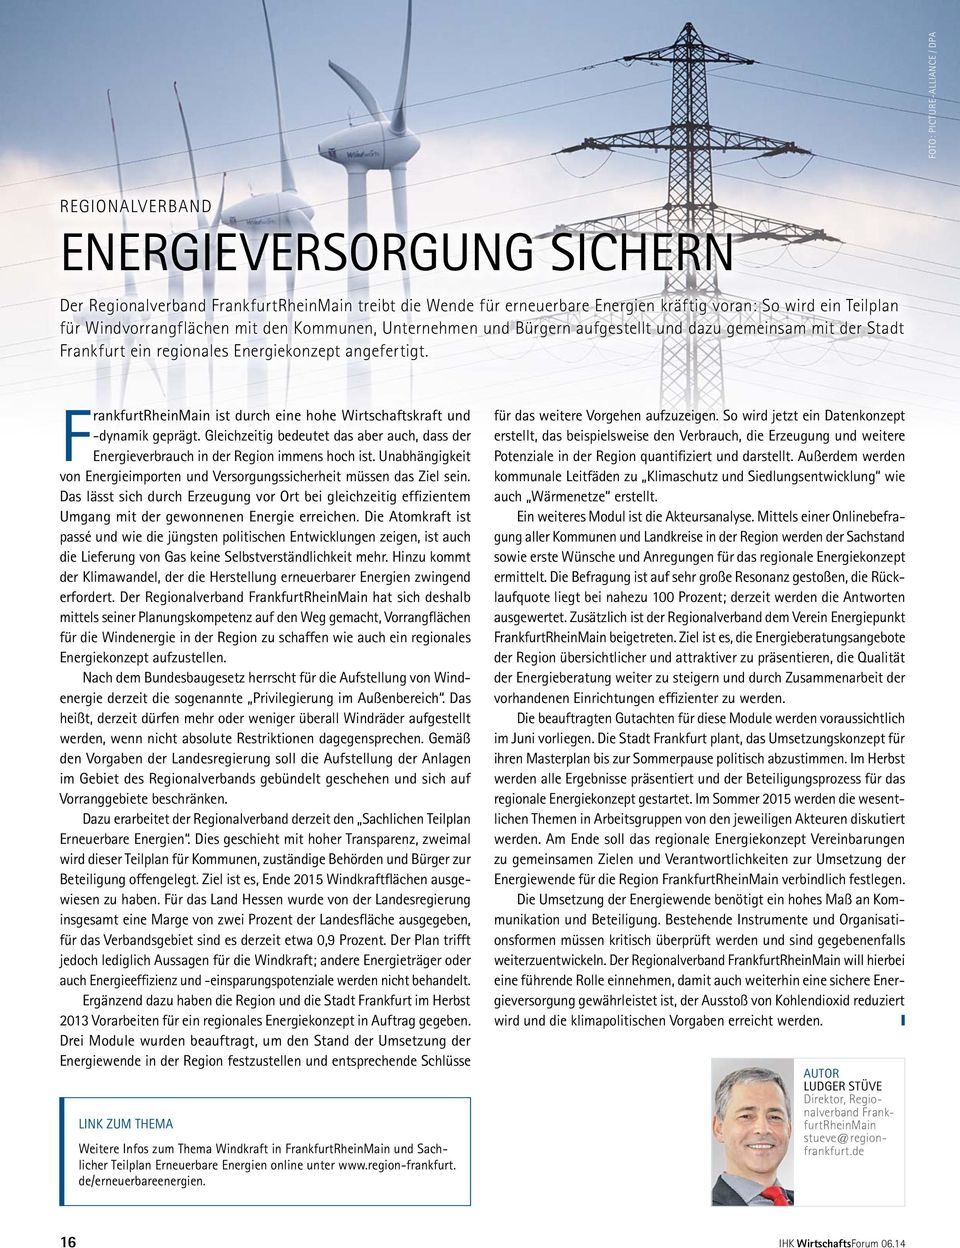 FrankfurtRheinMain ist durch eine hohe Wirtschaftskraft und -dynamik geprägt. Gleichzeitig bedeutet das aber auch, dass der Energieverbrauch in der Region immens hoch ist.